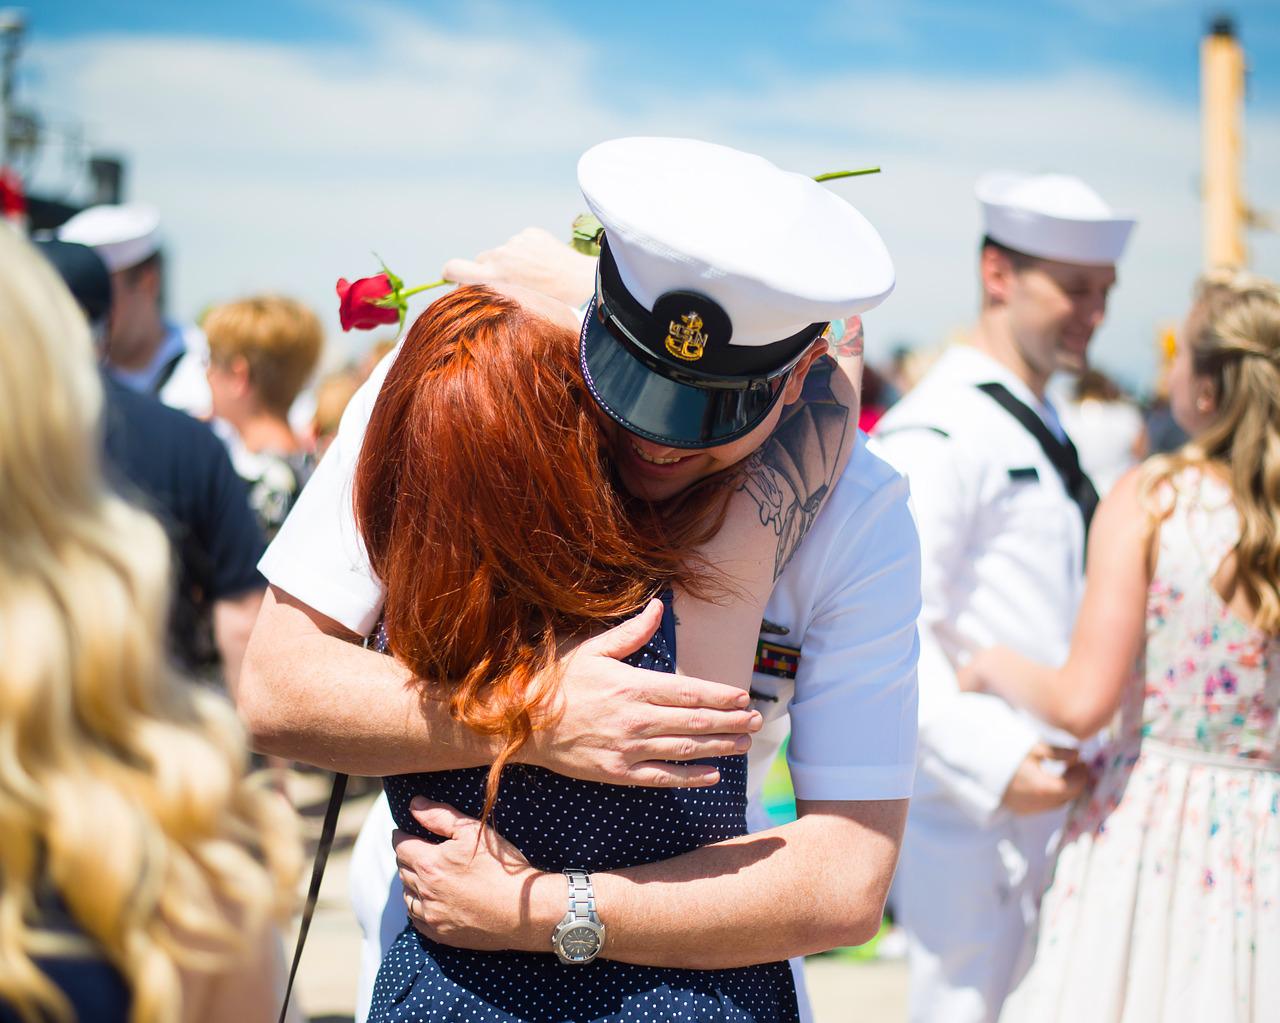 sailor hugging a woman